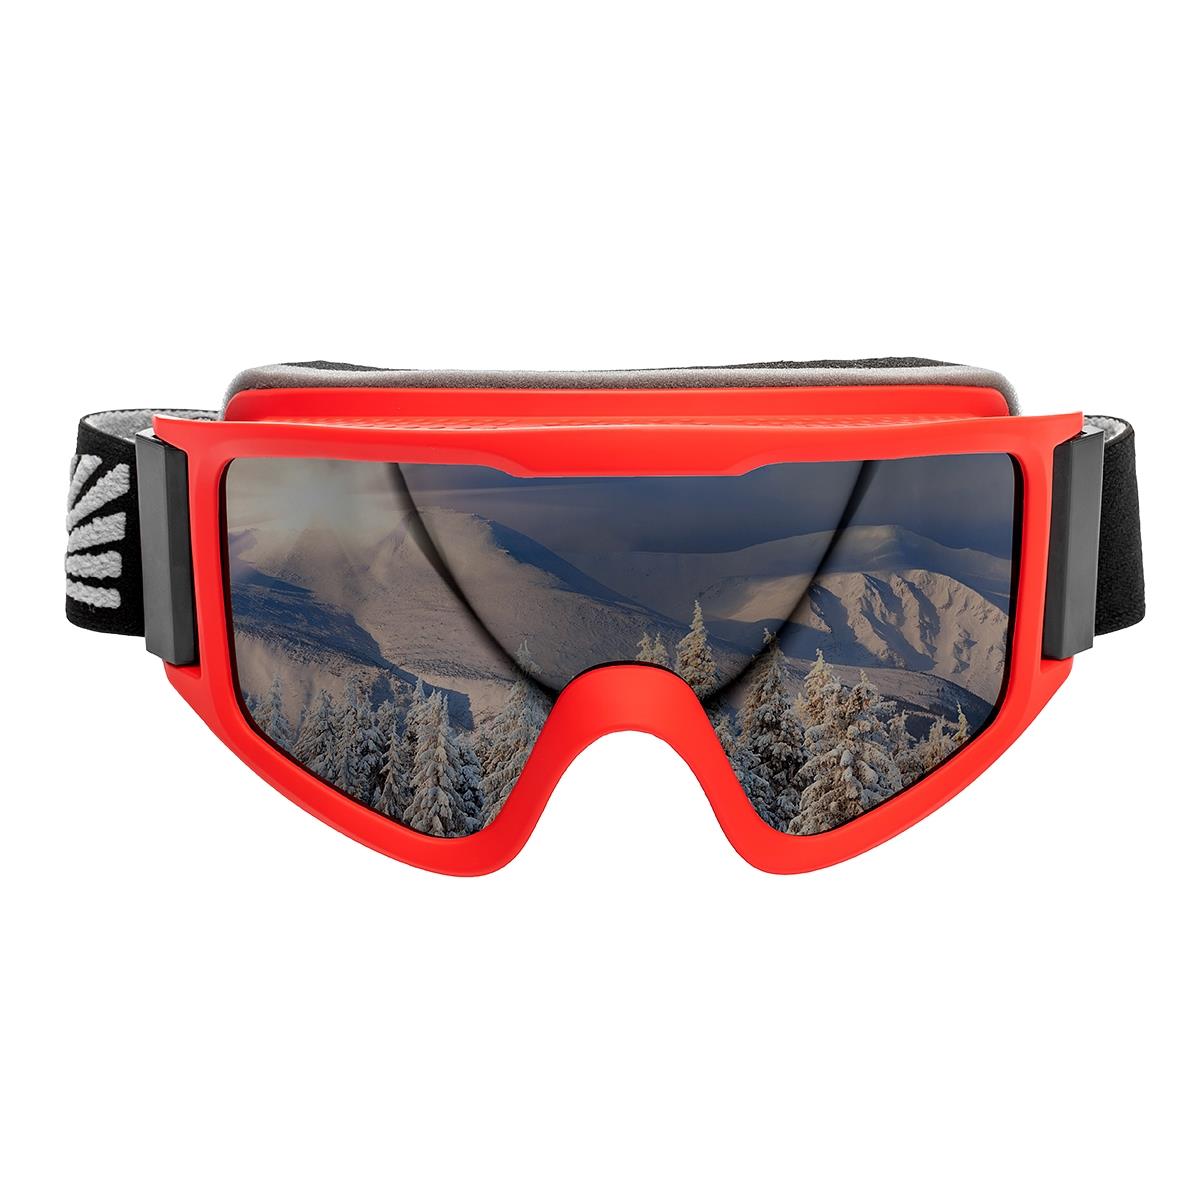 Очки горнолыжные HS-HX-042 Helios очки полумаска для плавания с берушами детские uv защита